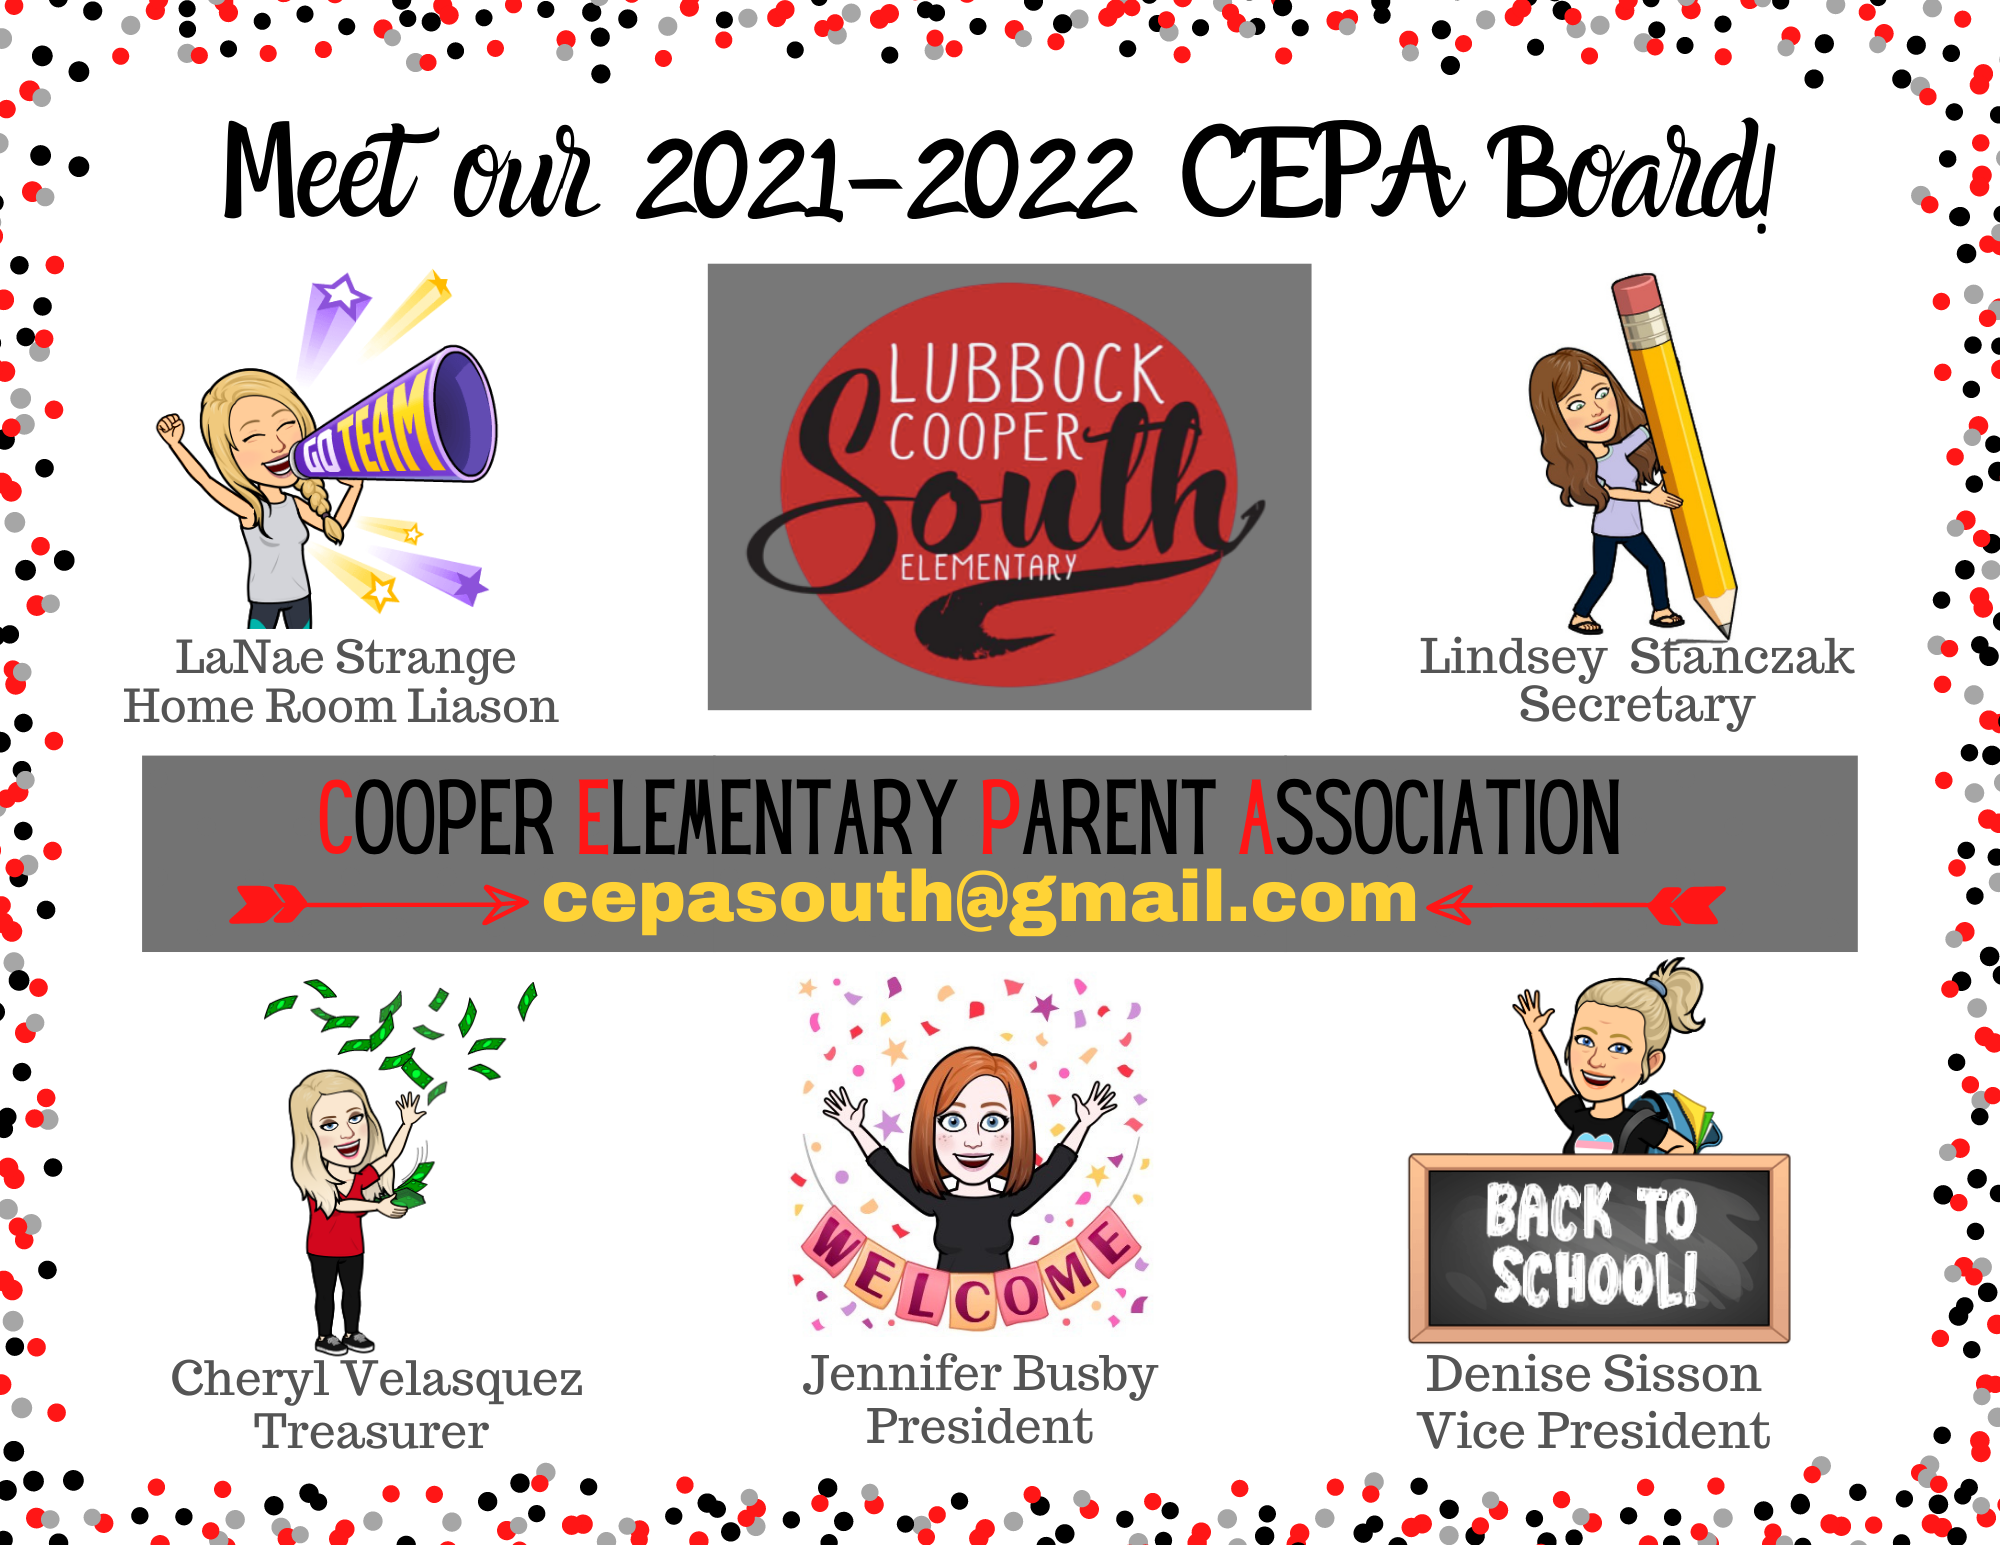 CEPA Board